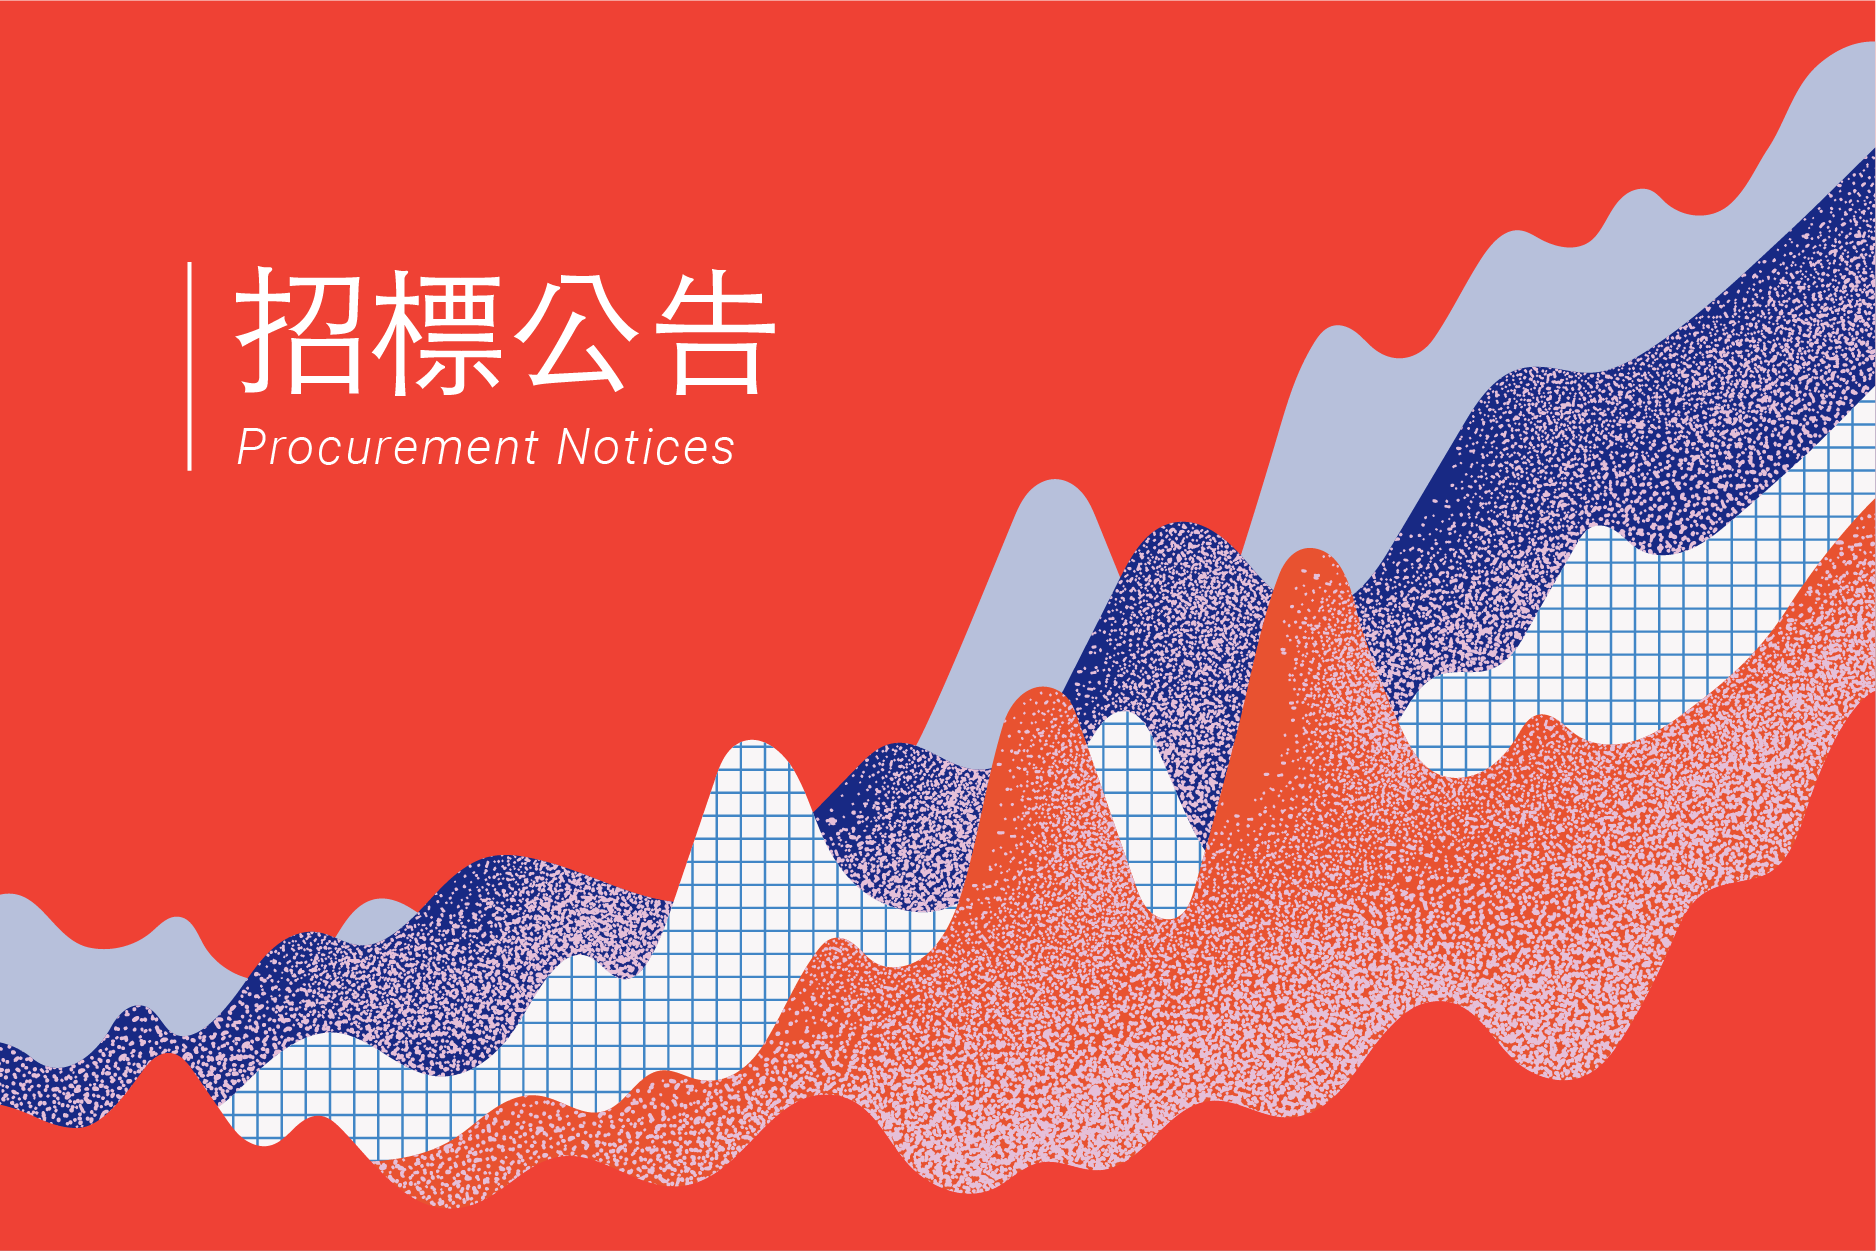 2021年臺灣文化創意產業發展年報編印計畫勞務採購案(公開評選)